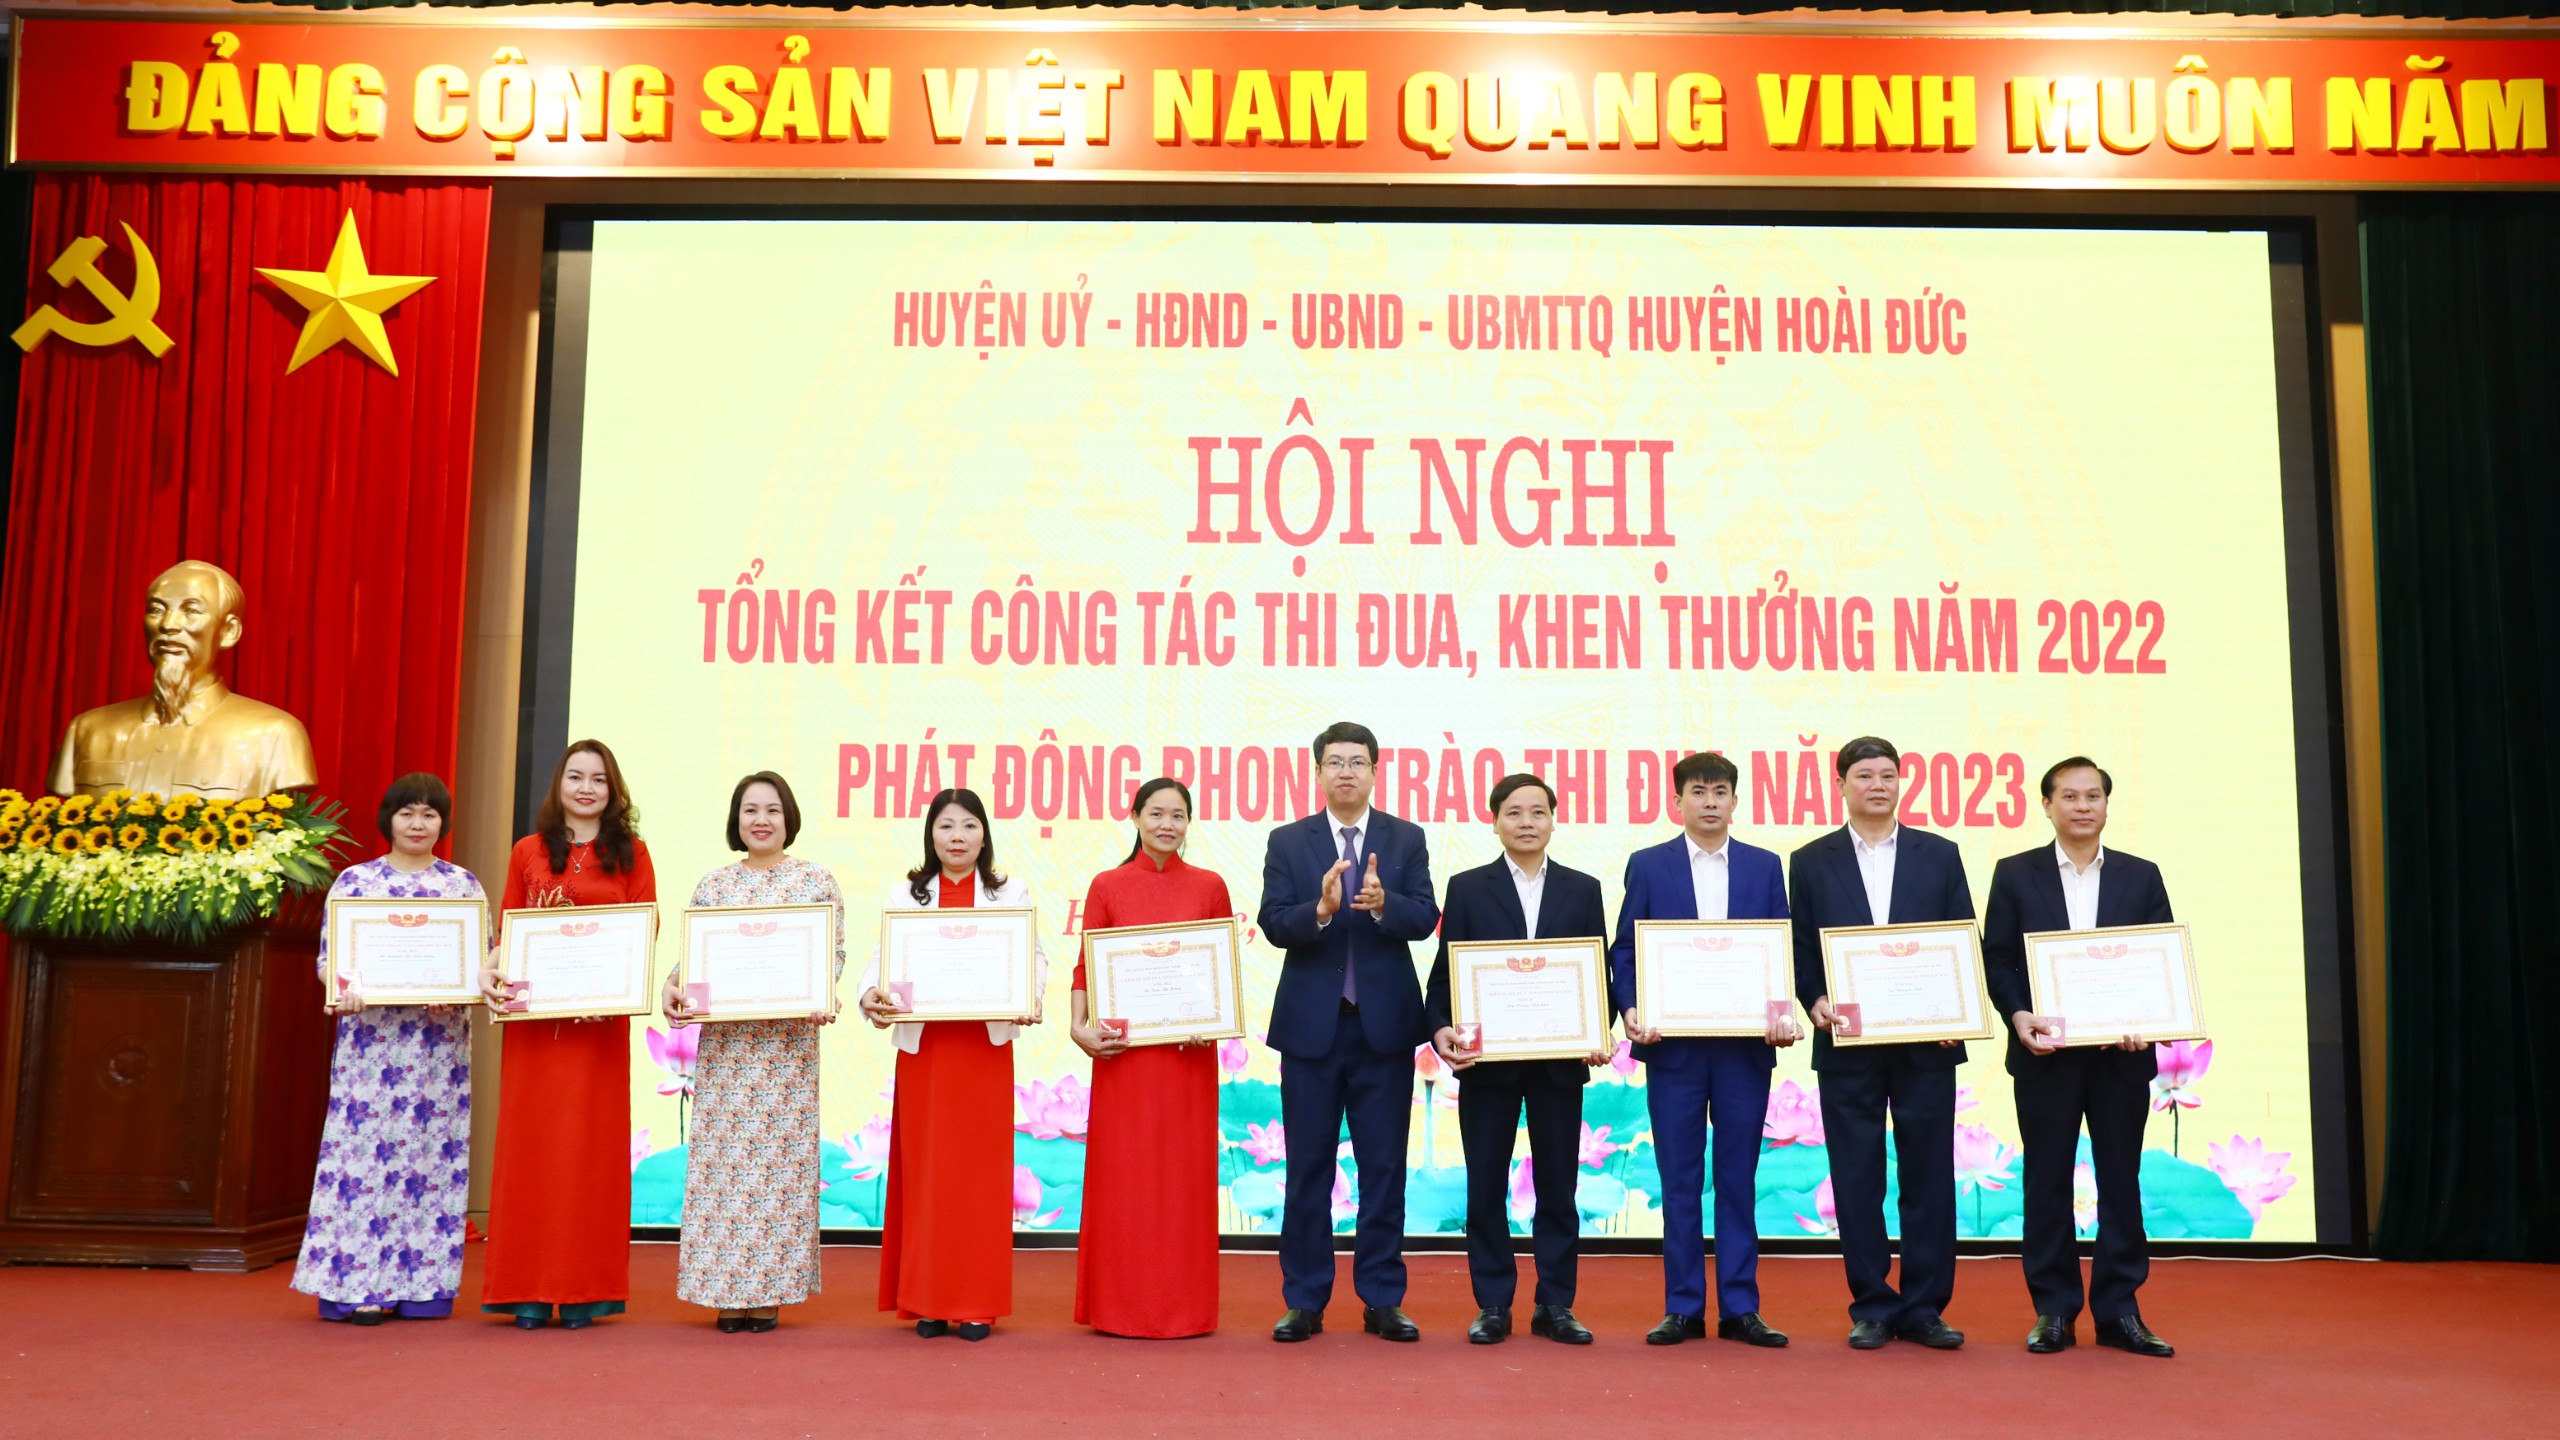 Cô giáo Nguyễn Thị Hiền Lương - Bí thư Chi bộ - Hiệu trưởng nhà trường đã vinh dự đạt danh hiệu Chiến sĩ thi đua TP